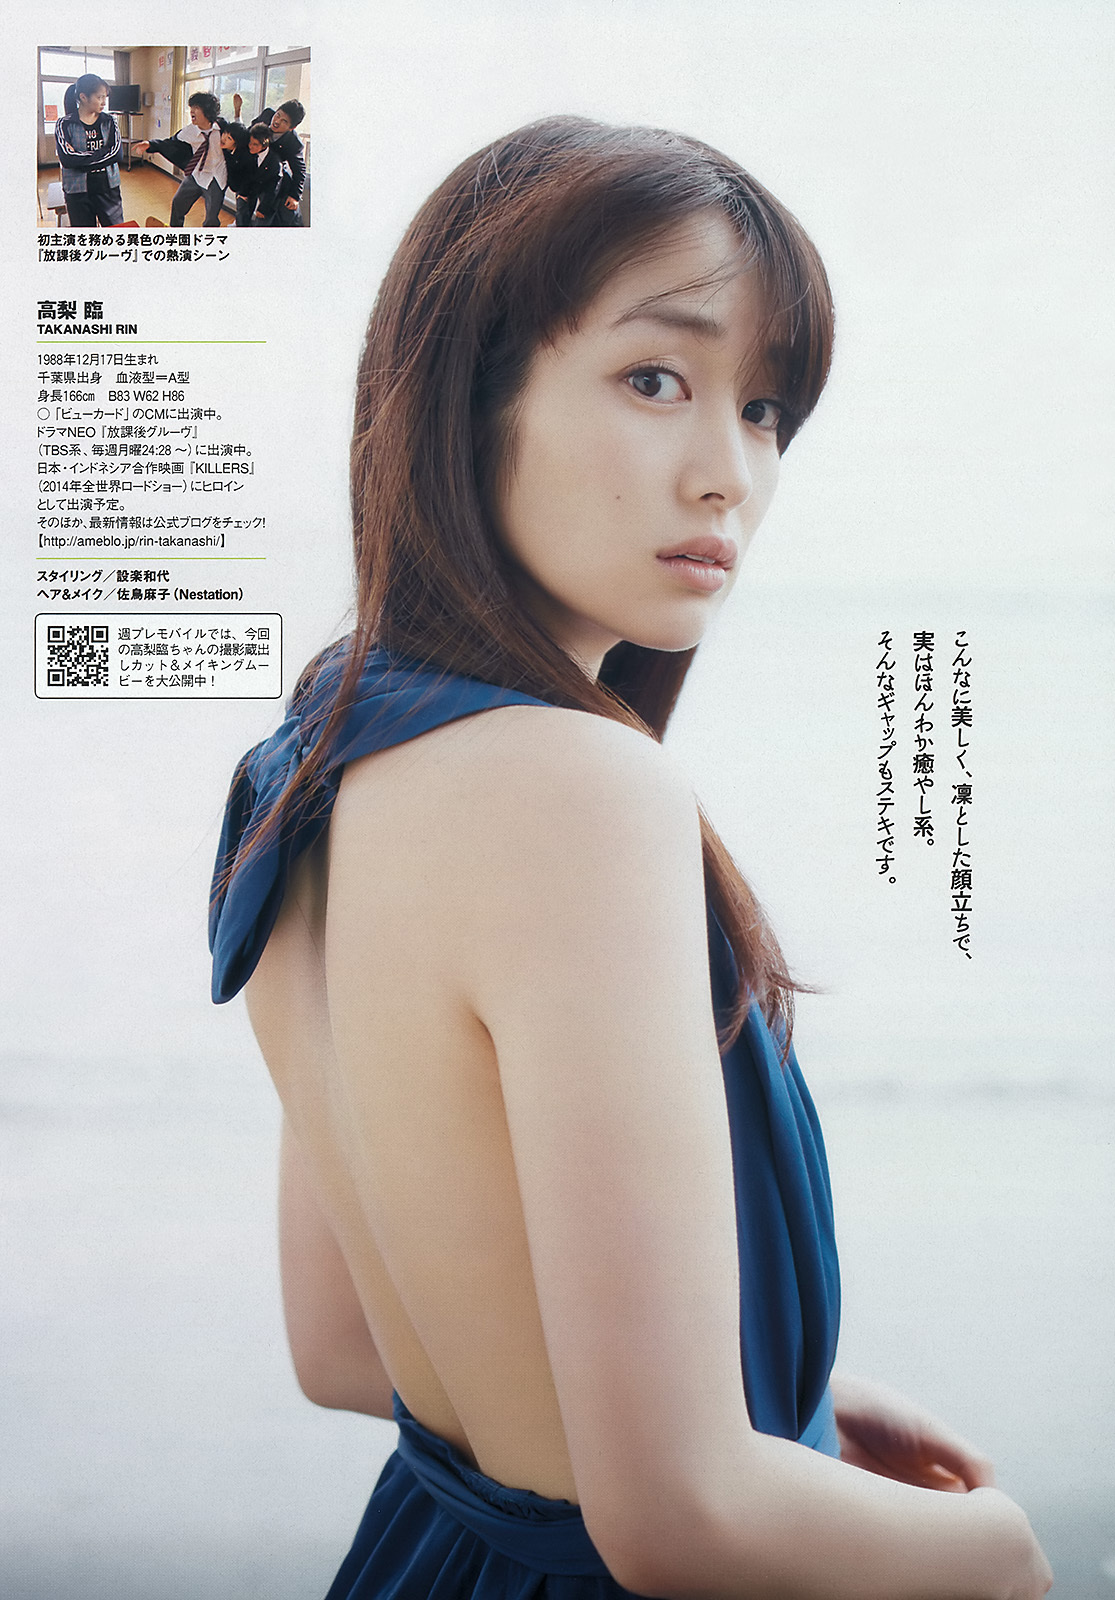 [weekly Playboy] No.22 Yoshiko Oshima, you Ma, you Gao, Li Lin, Xingnai, Songwei, Yilijia, Qingshui, Fumei, baishimolinai